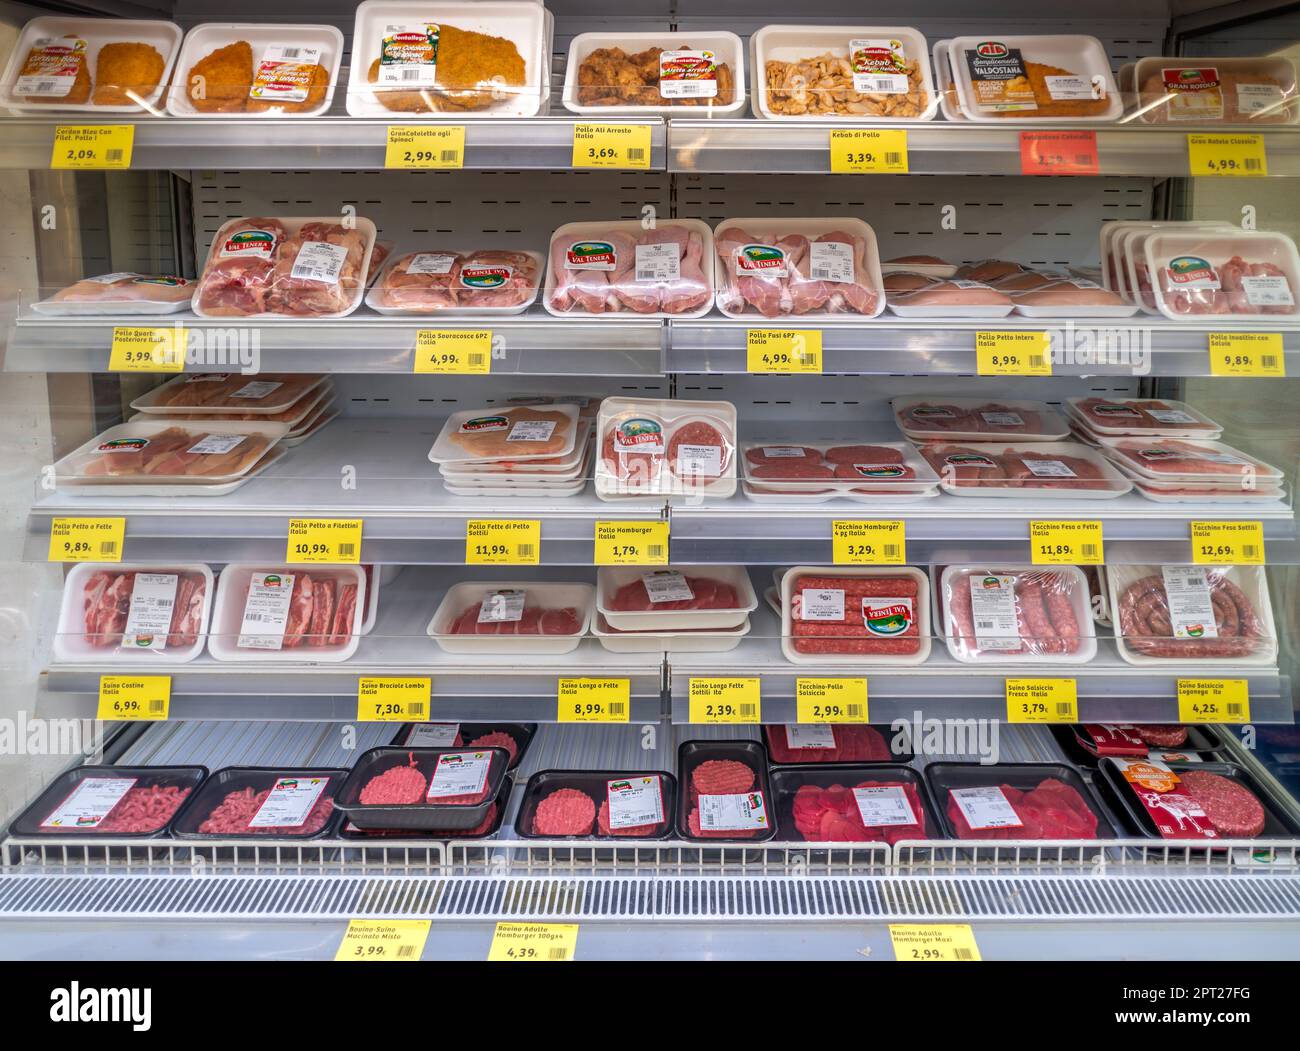 Torino, Italia - 27 aprile 2023: Scaffale refrigerato con carne fresca confezionata in vendita al supermercato italiano, confezioni sottovuoto di manzo, maiale, pollame con p Foto Stock